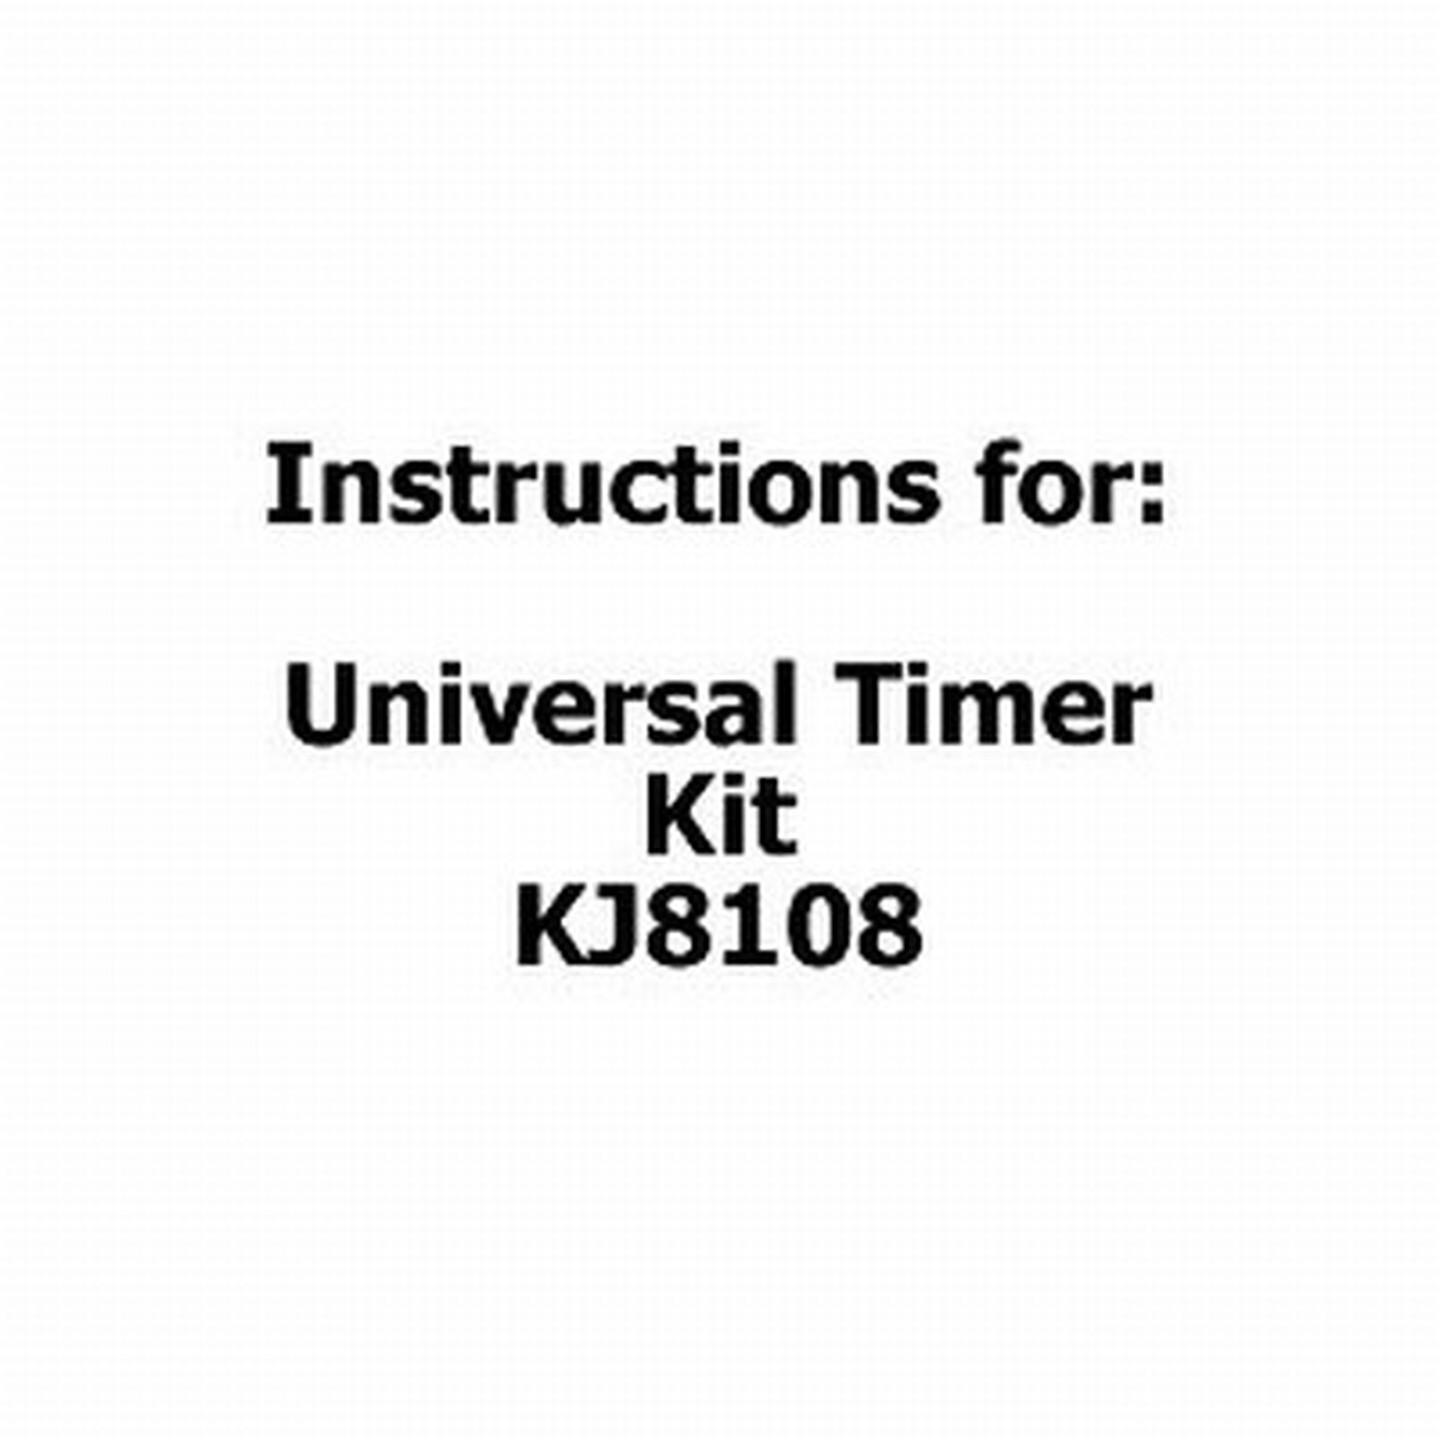 Instructions for Universal Timer Kit - KJ8108